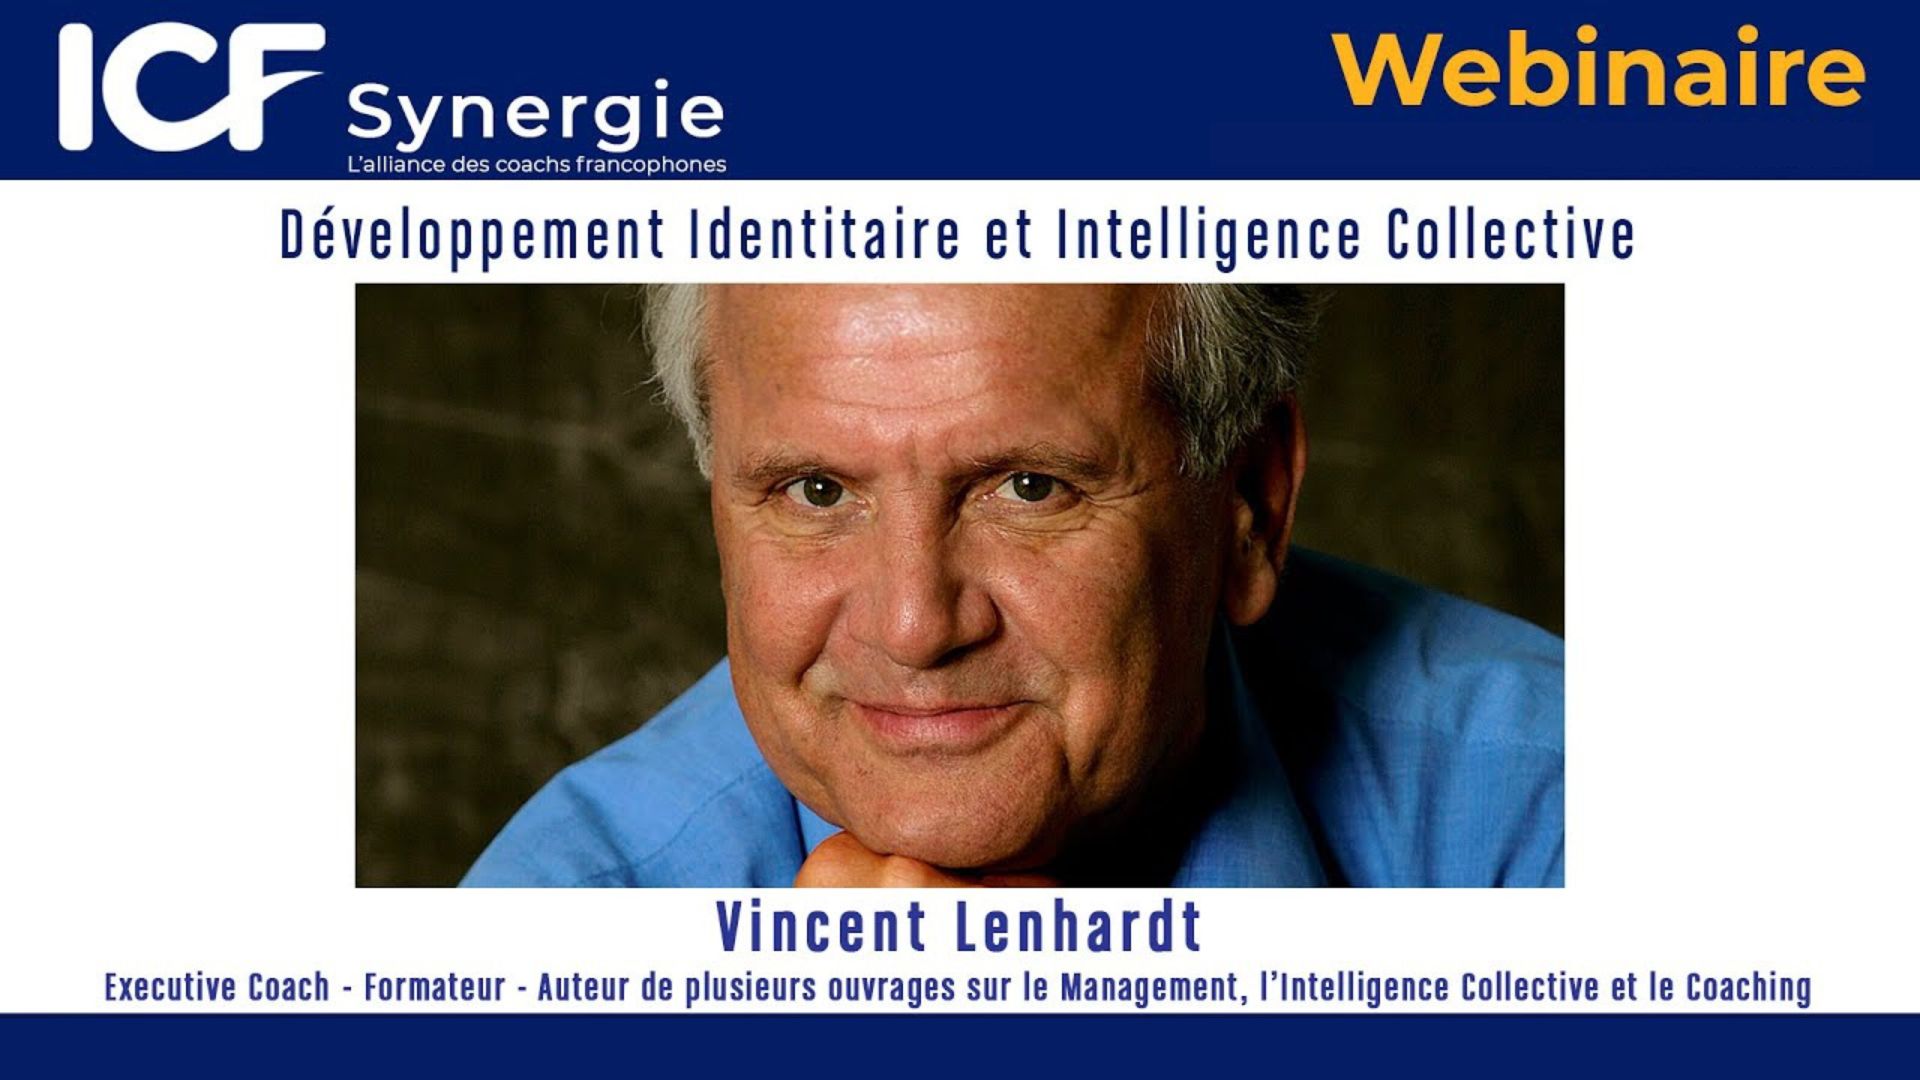 Webinaire ICF Vincent Lenhardt